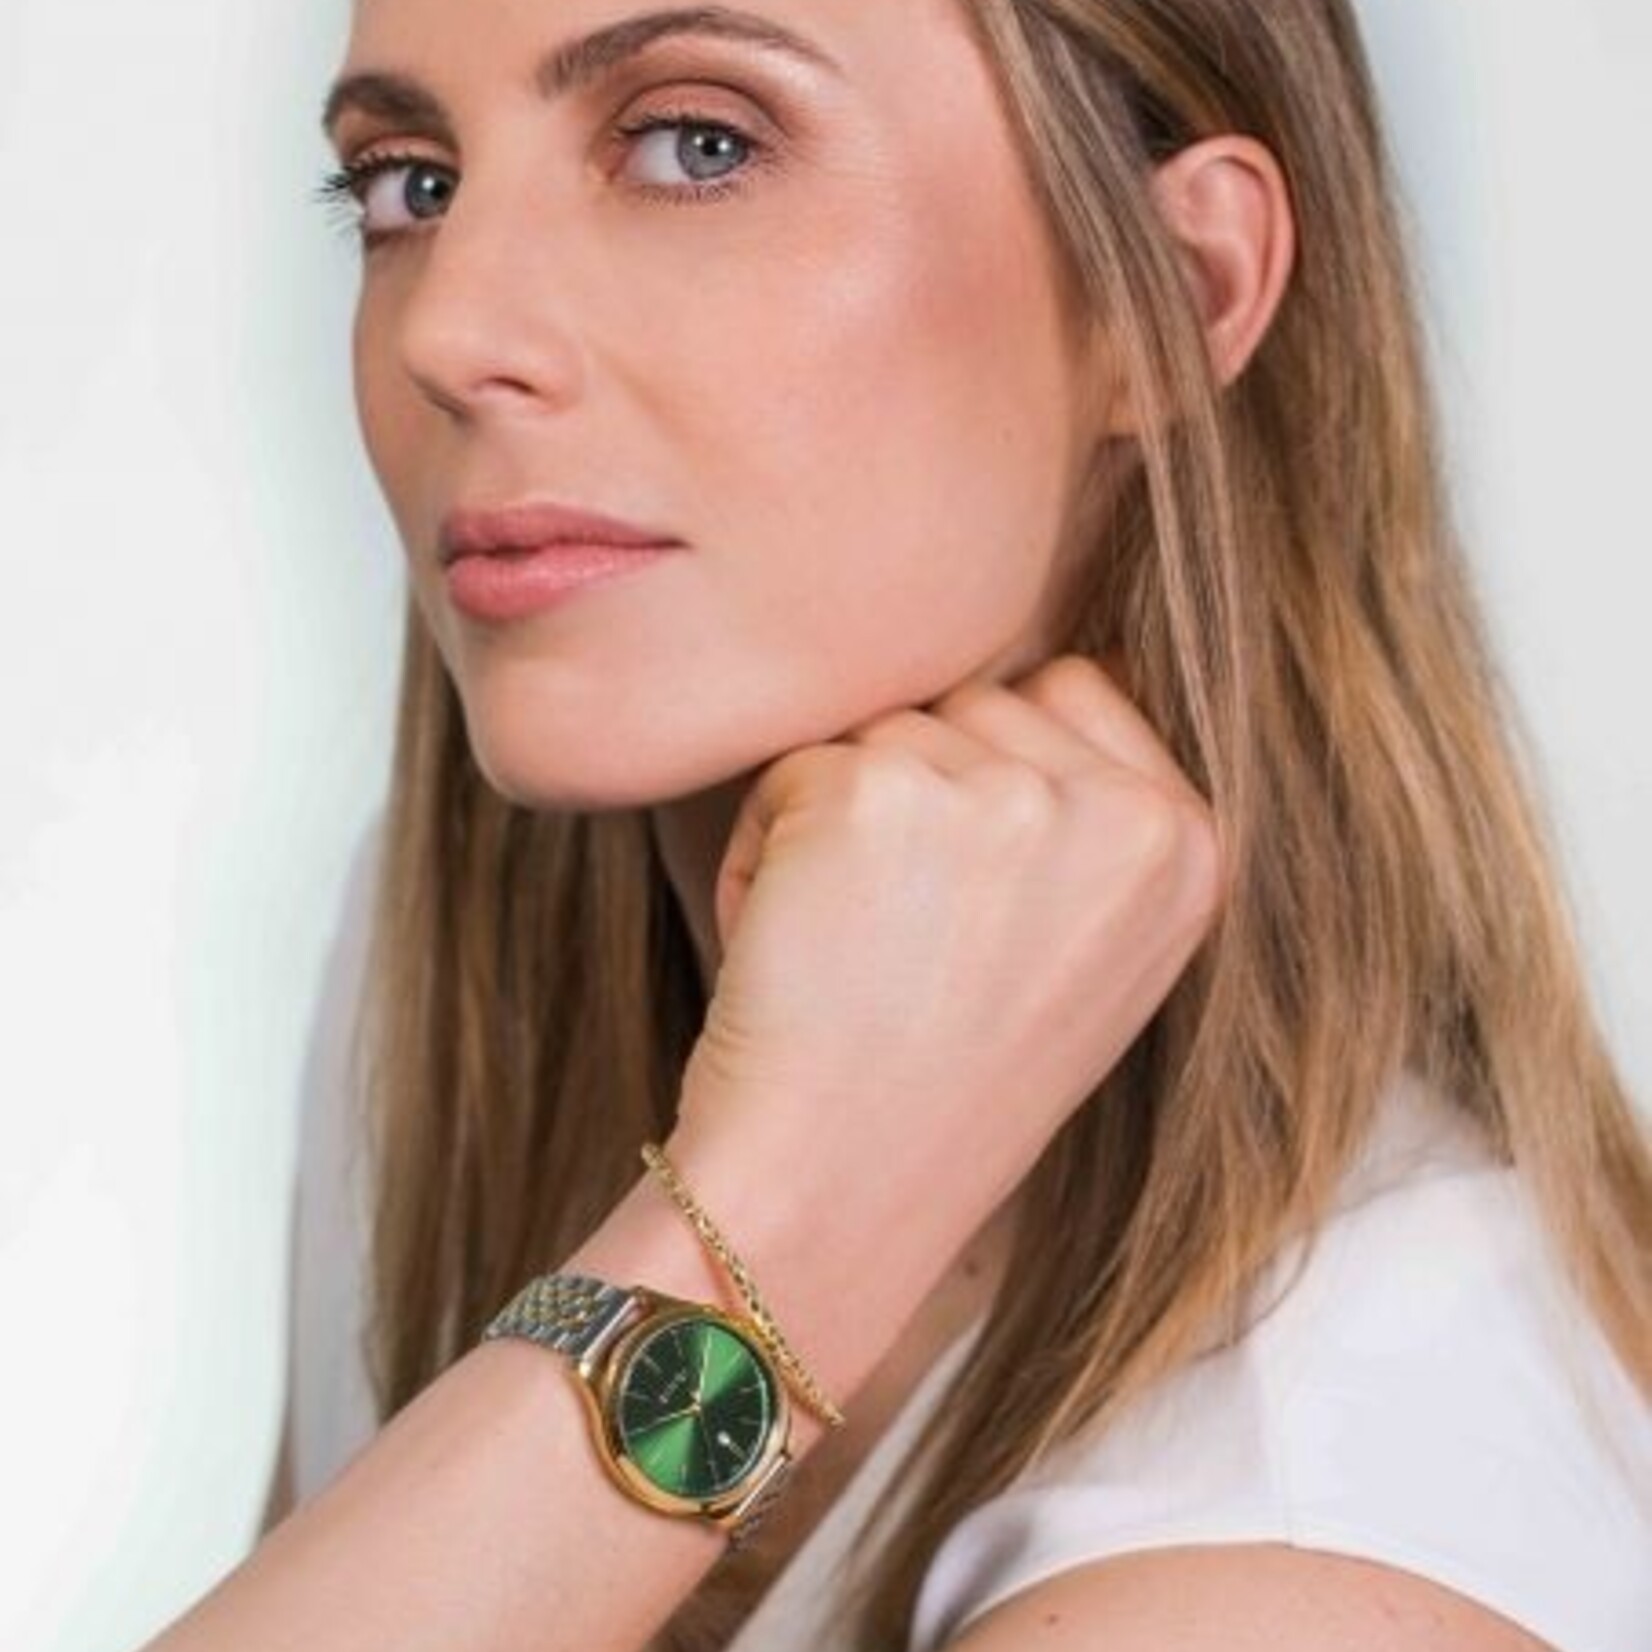 Zinzi ZINZI Classy horloge 34mm groene wijzerplaat goudkleurige stalen kast en bicolor band, datum ziw1035